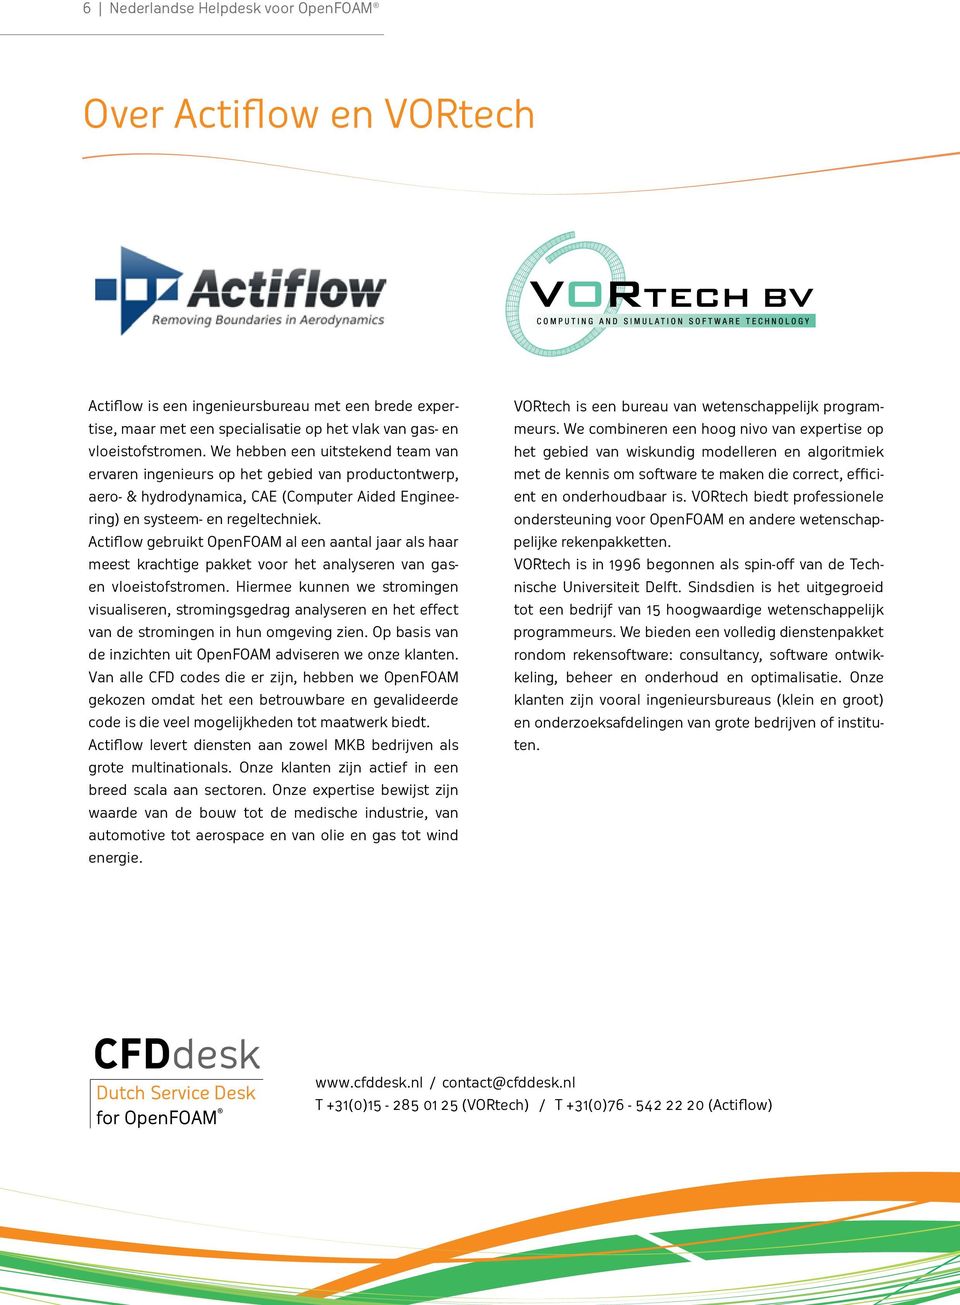 Actiflow gebruikt OpenFOAM al een aantal jaar als haar meest krachtige pakket voor het analyseren van gasen vloeistofstromen.